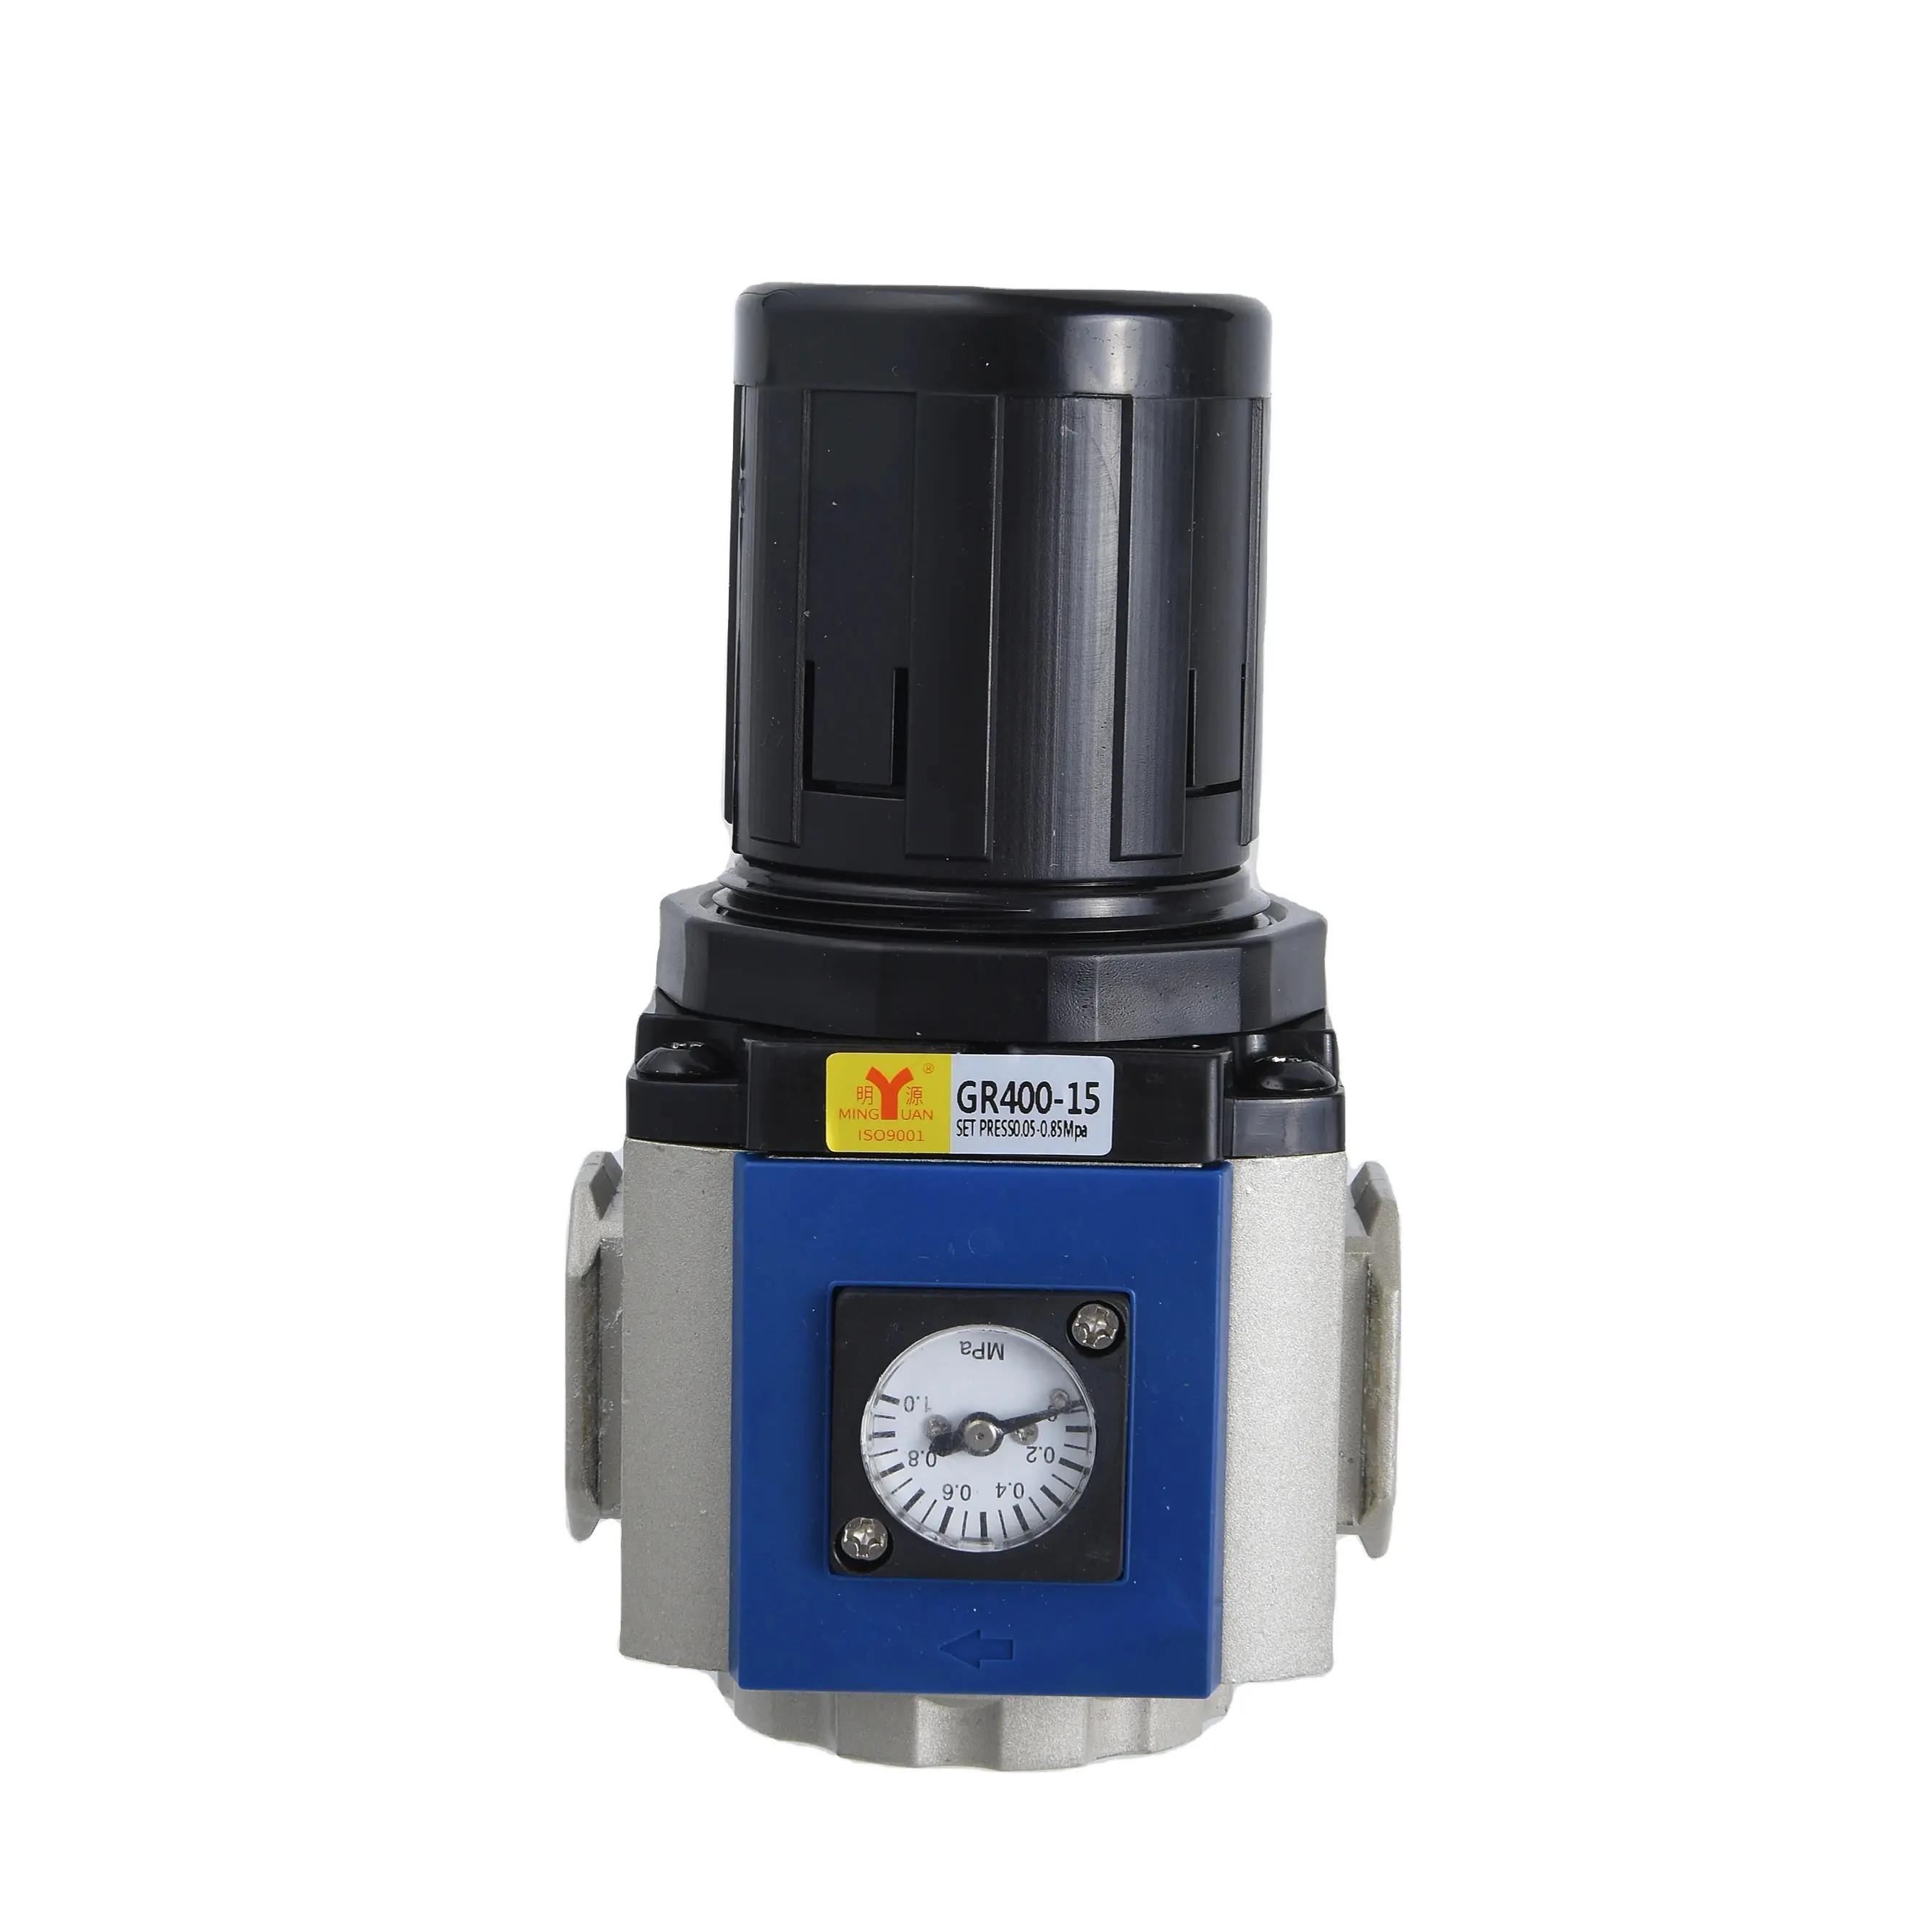 Baixo preço GR400-15 PT 1/2 Compressed Air Pressure Regulator com suporte Air Source Treatment Unit